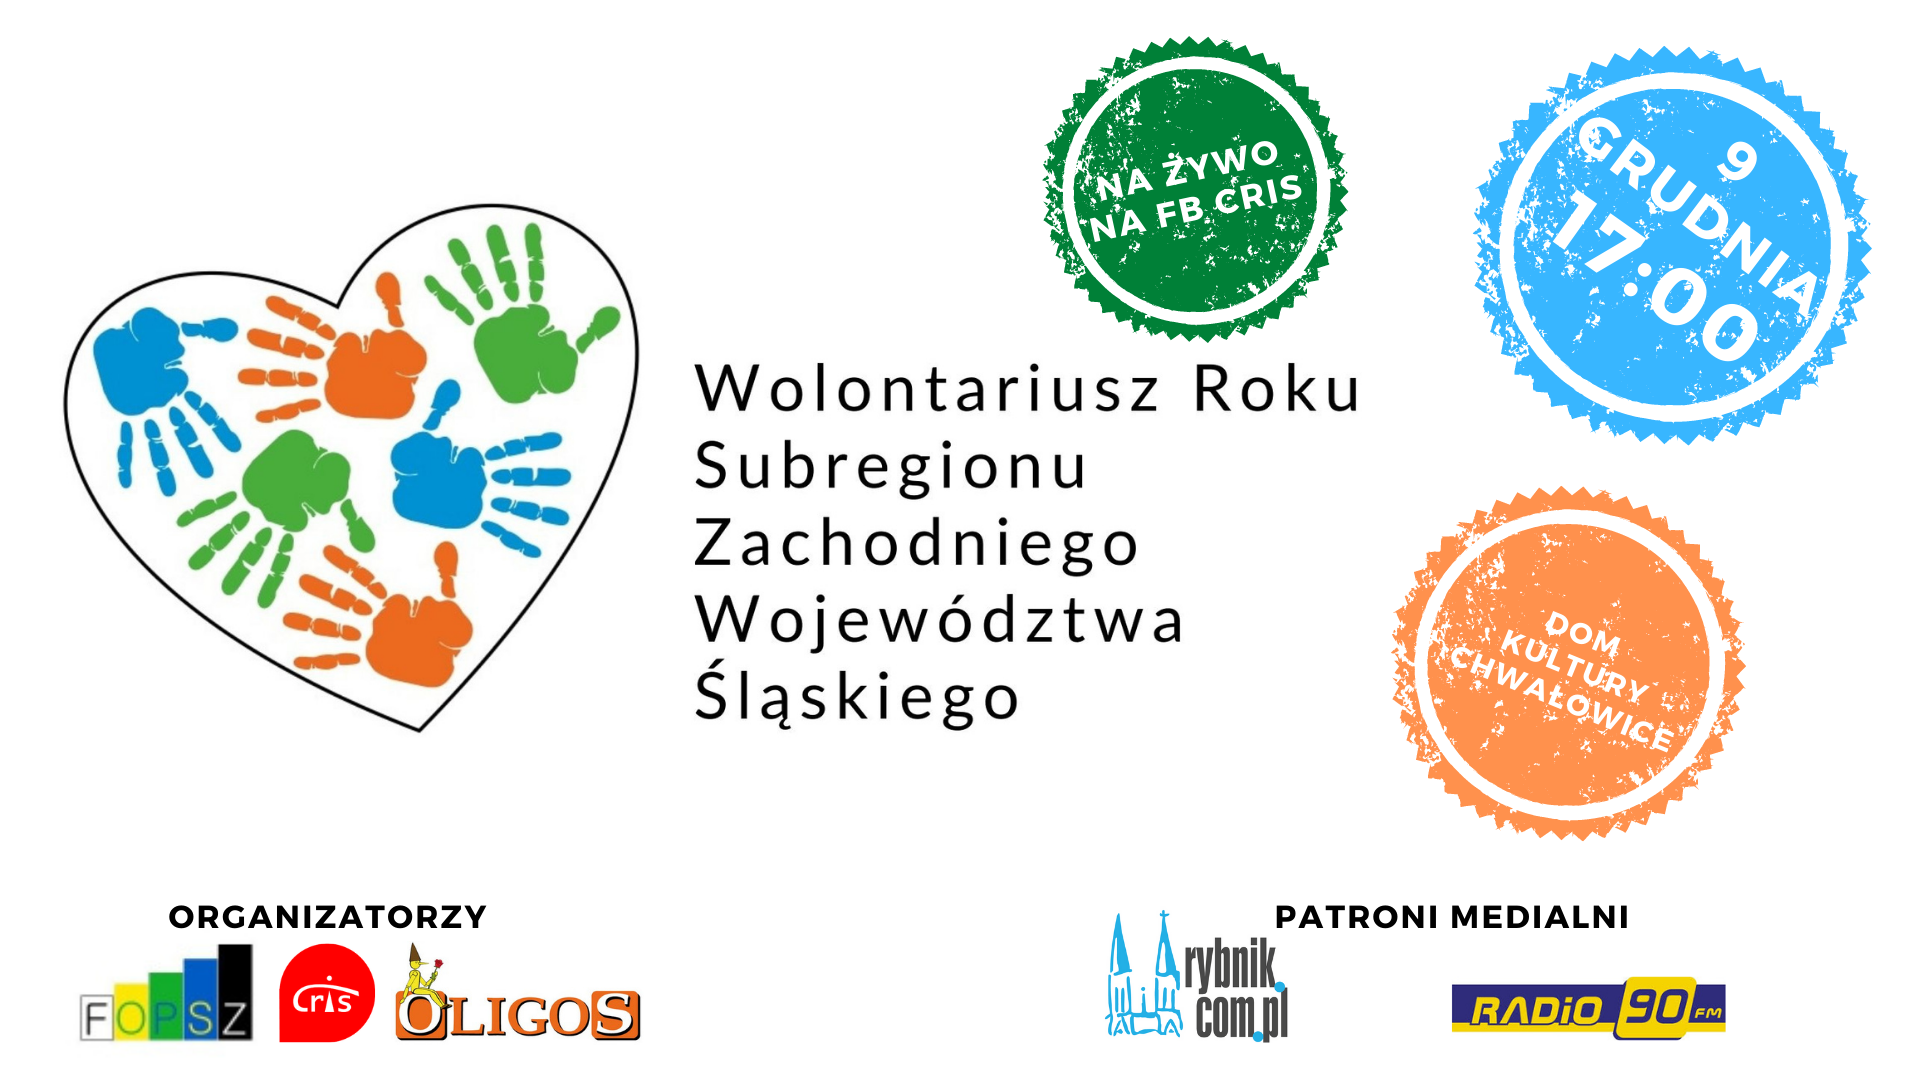 Wolontariusz Roku 2021 Subregionu Zachodniego Województwa Śląskiego